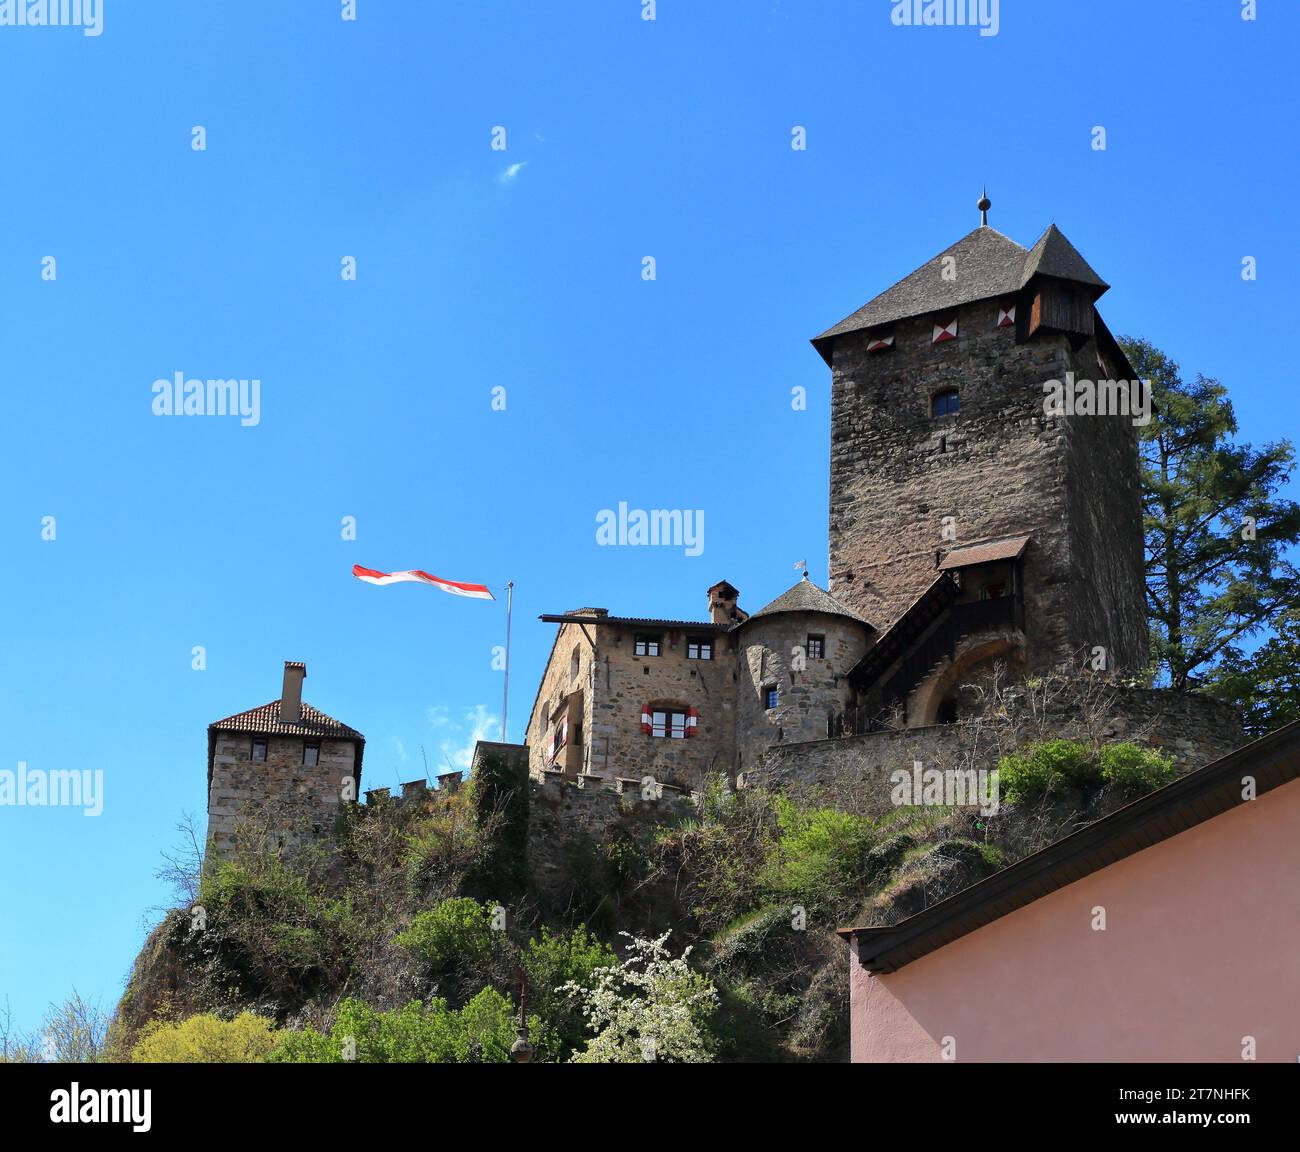 Castello di Branzoll (Burg Branzoll), Klausen, alto Adige (Südtirol), Italia. Castel Branzoll, chiusa, alto Adige, Italia Foto Stock